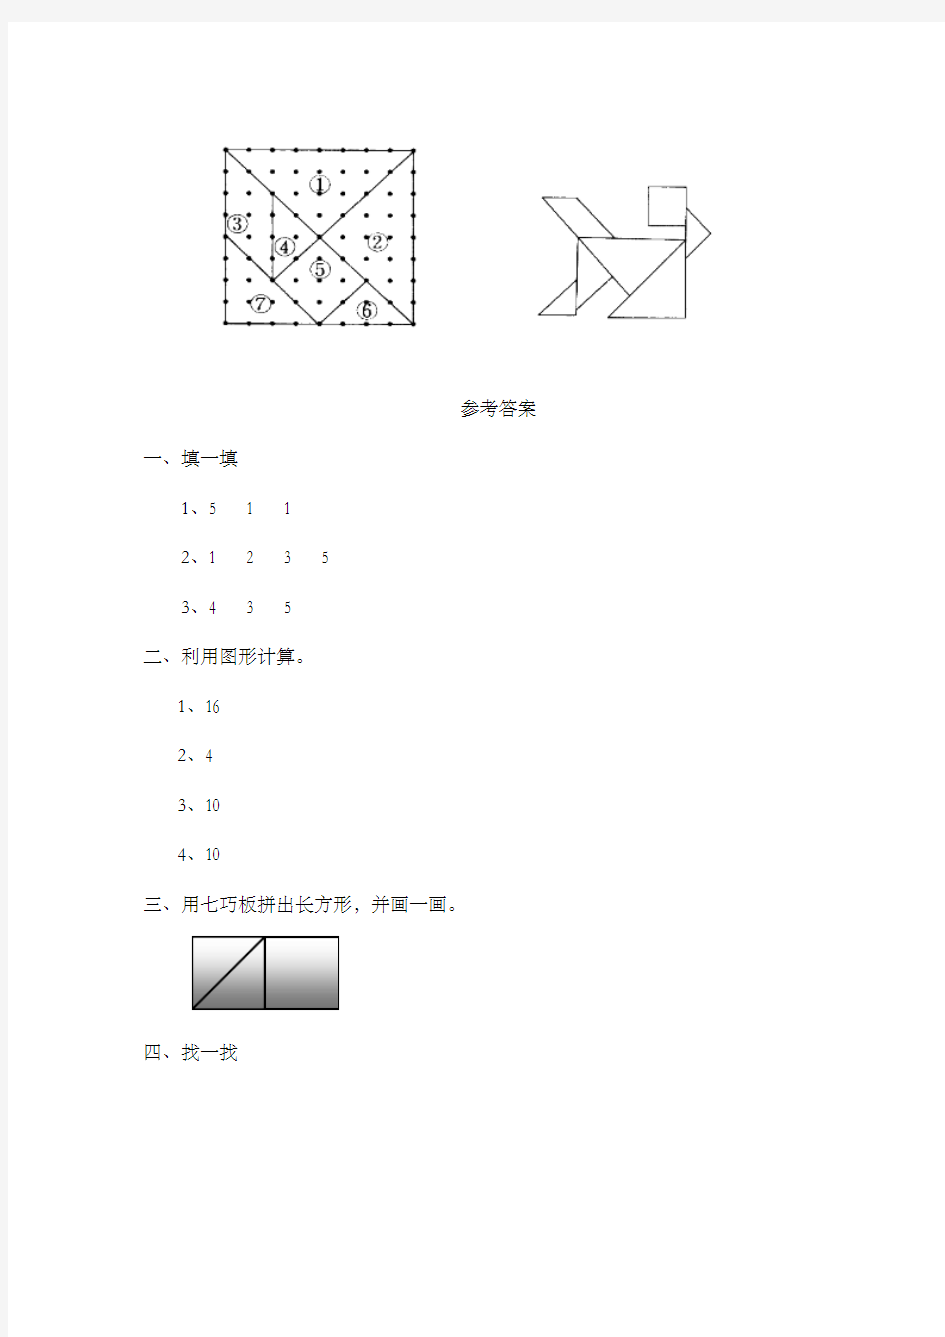 新人教版新课标数学小学一年级下册《用七巧板拼图形》过关习题